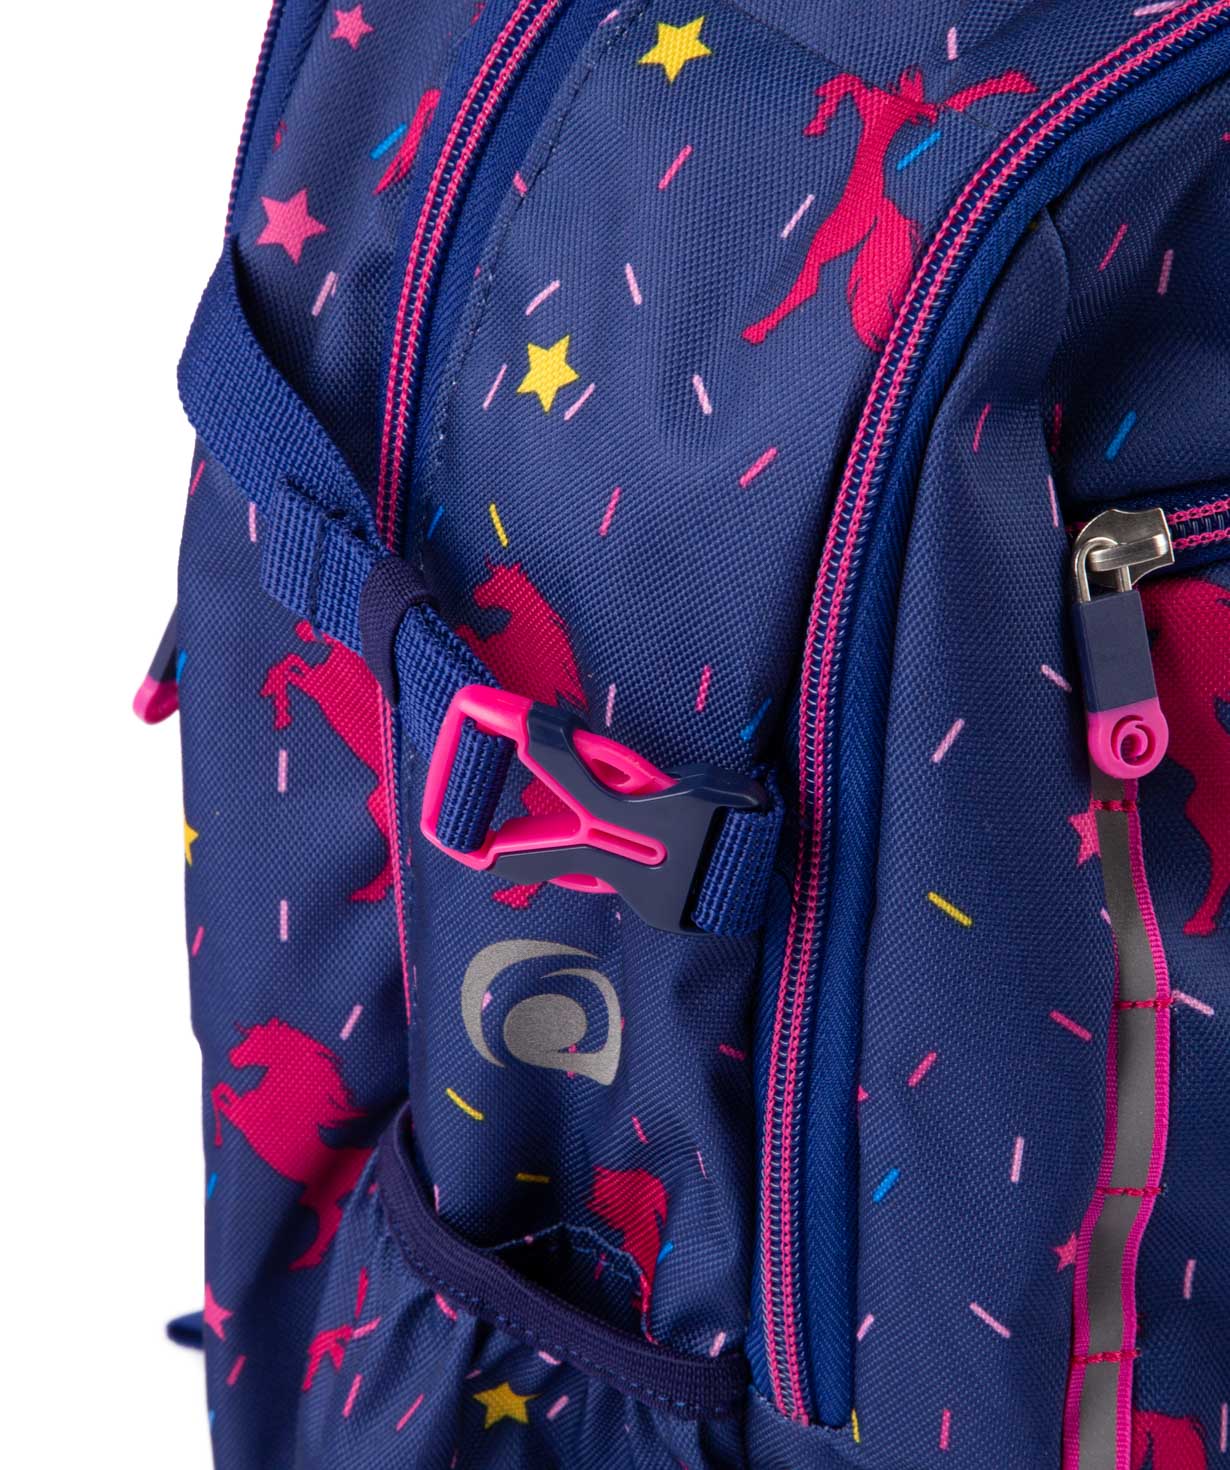 Backpack `Kiwi Kids` for children №14